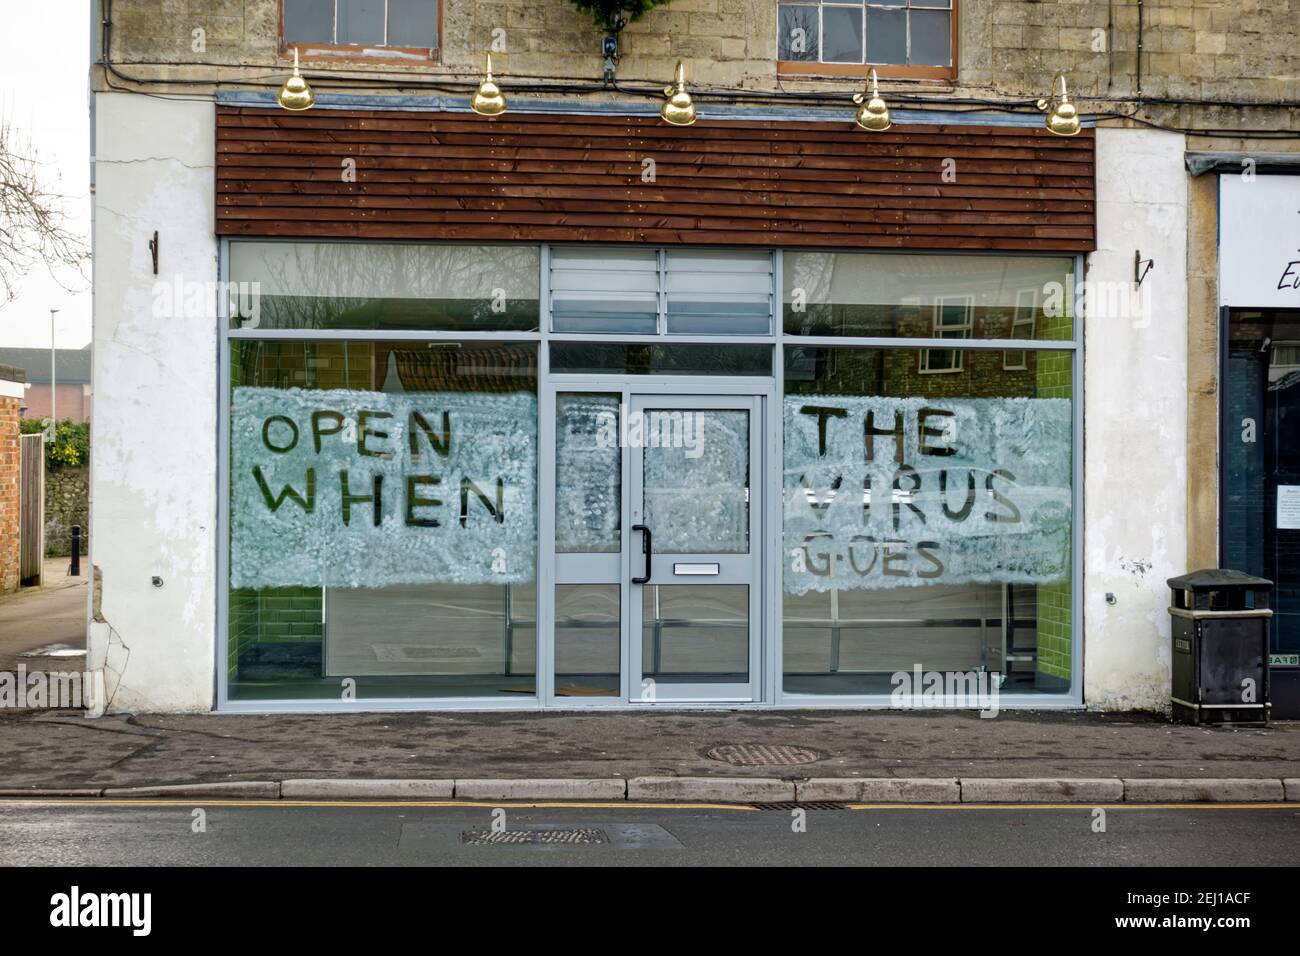 Warminster, Wiltshire, UK - Januar 7th 2021: Ein neues Fish & Chip-Geschäft in der George Street, Warminster, dessen Eröffnung aufgrund von Covid 19 verzögert wurde Stockfoto